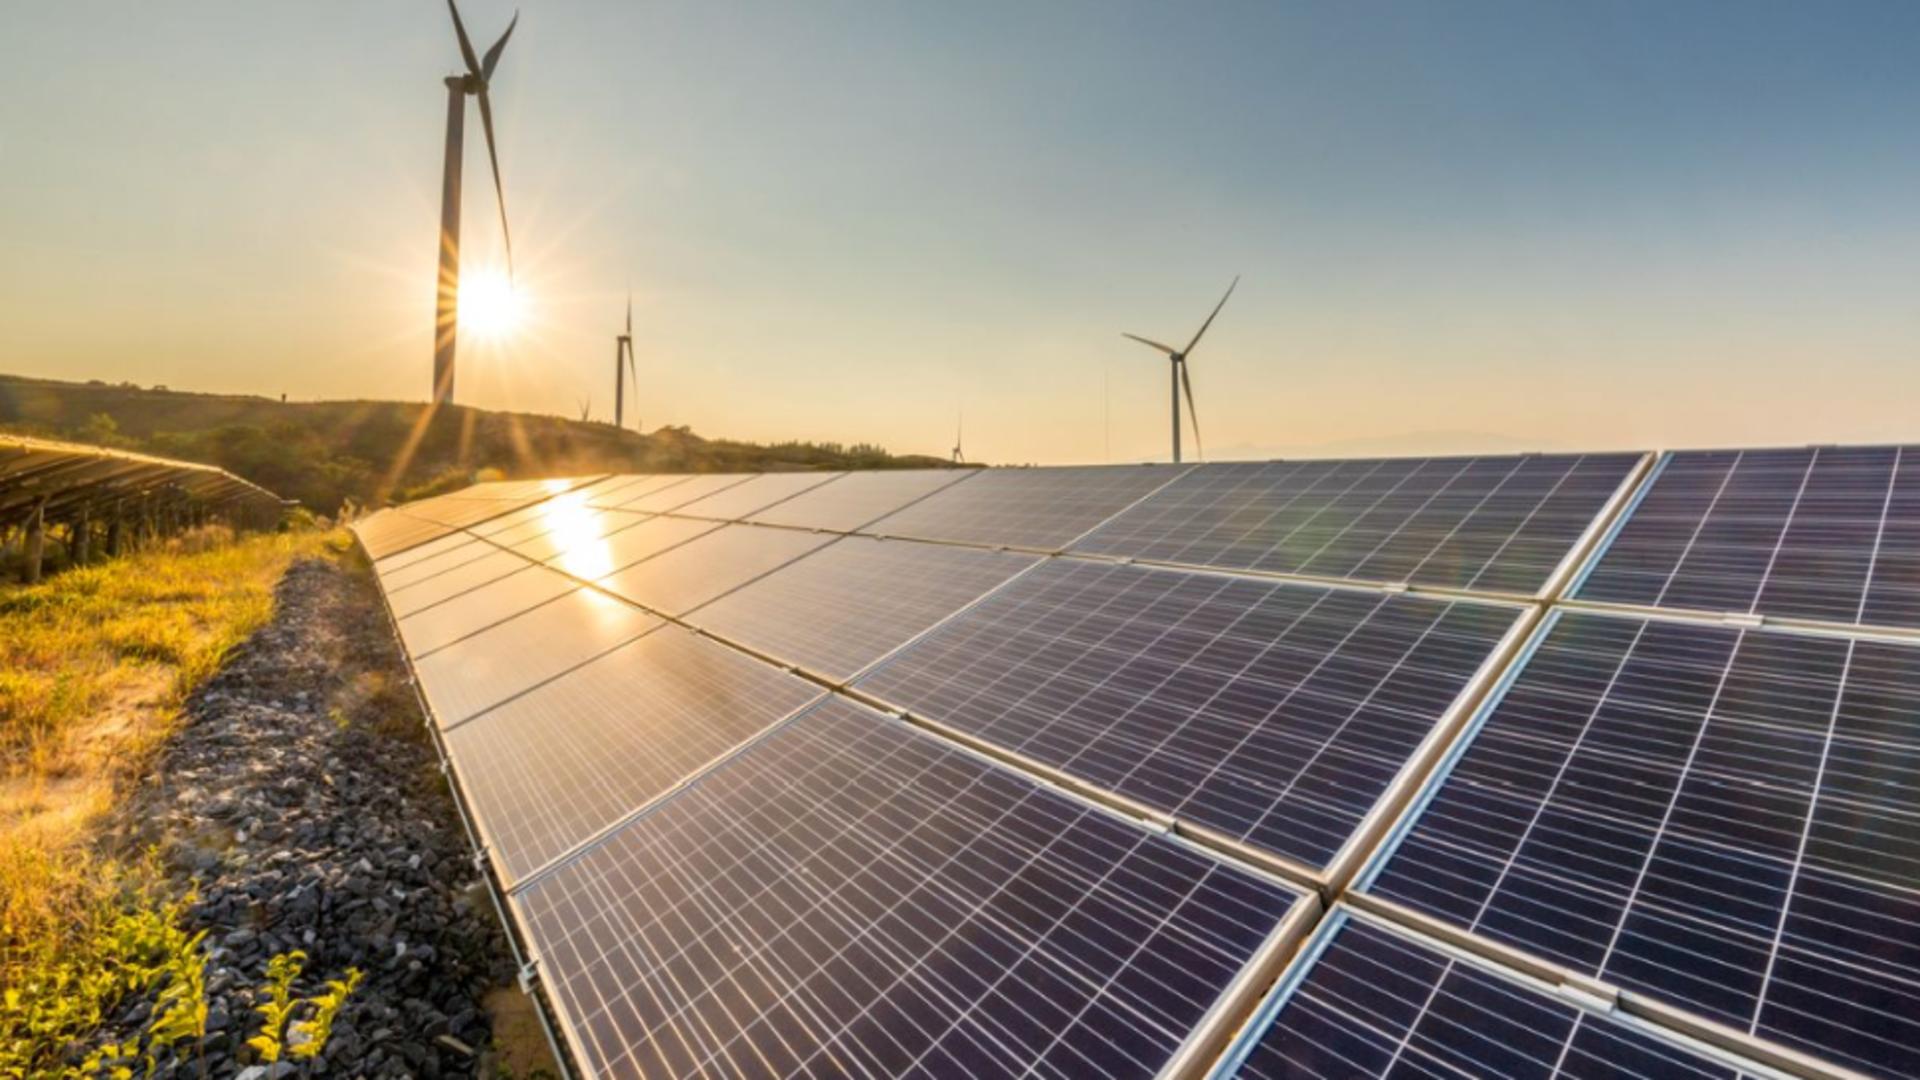 România a aderat la Alianța Solară Internațională, pentru dezvoltarea energiei solare – Anunțul Ministerului Energiei